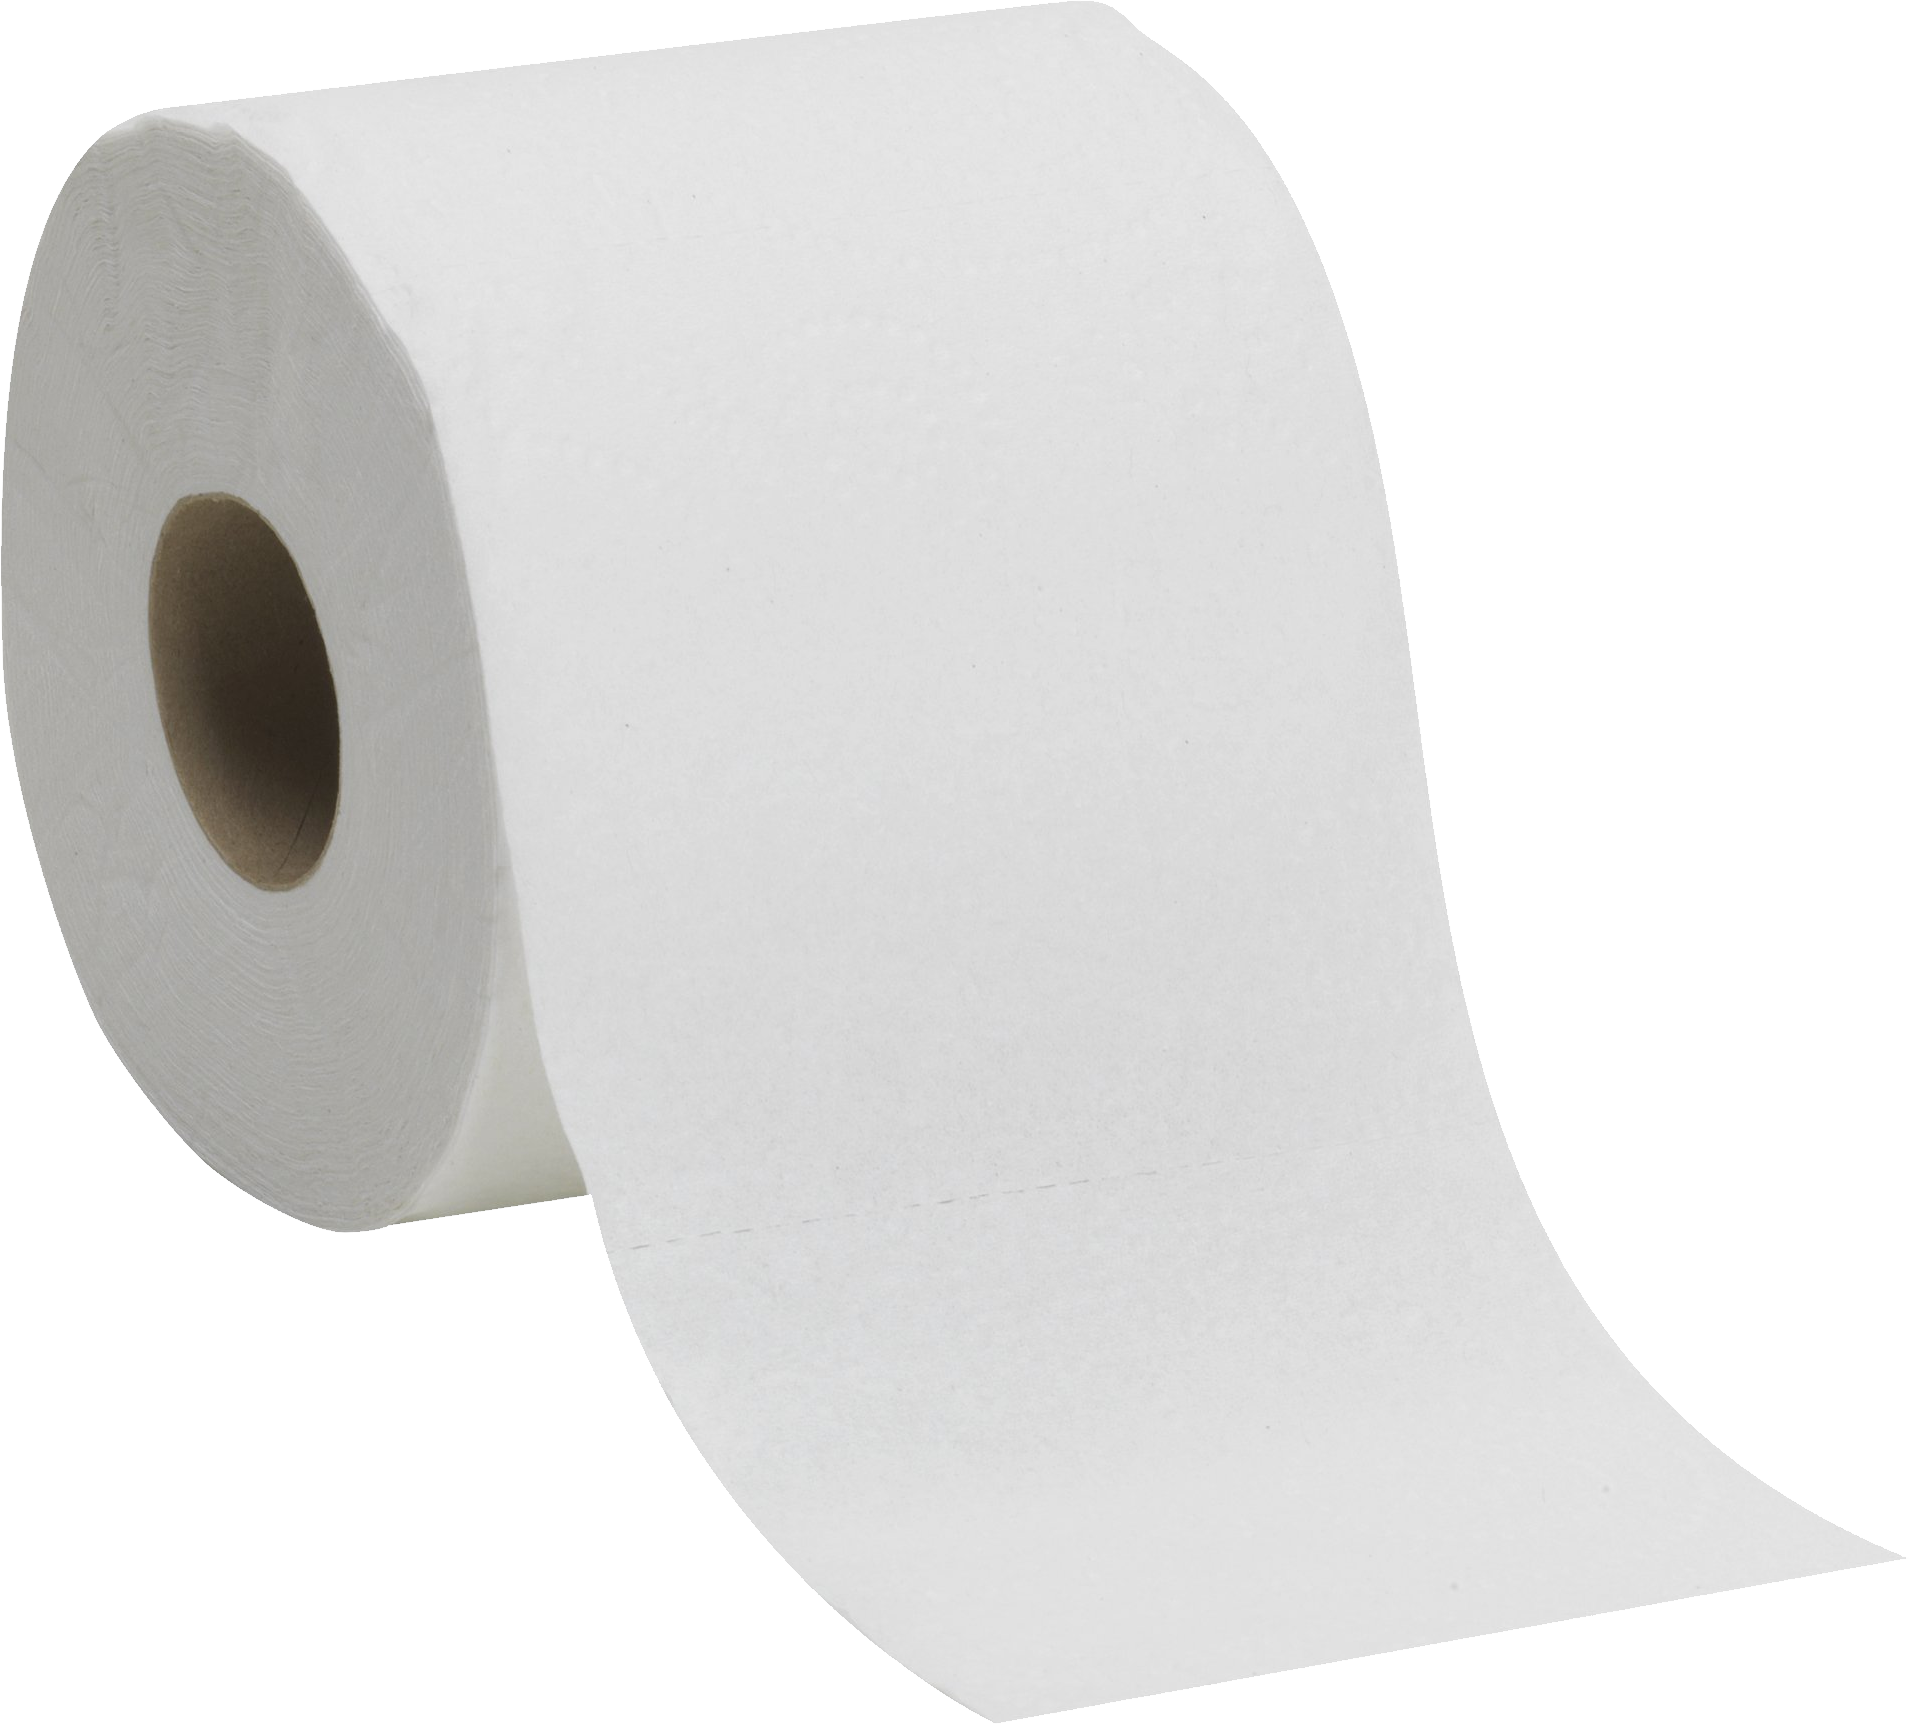 36/750 3.62"x 4.50" Toilet Tissue